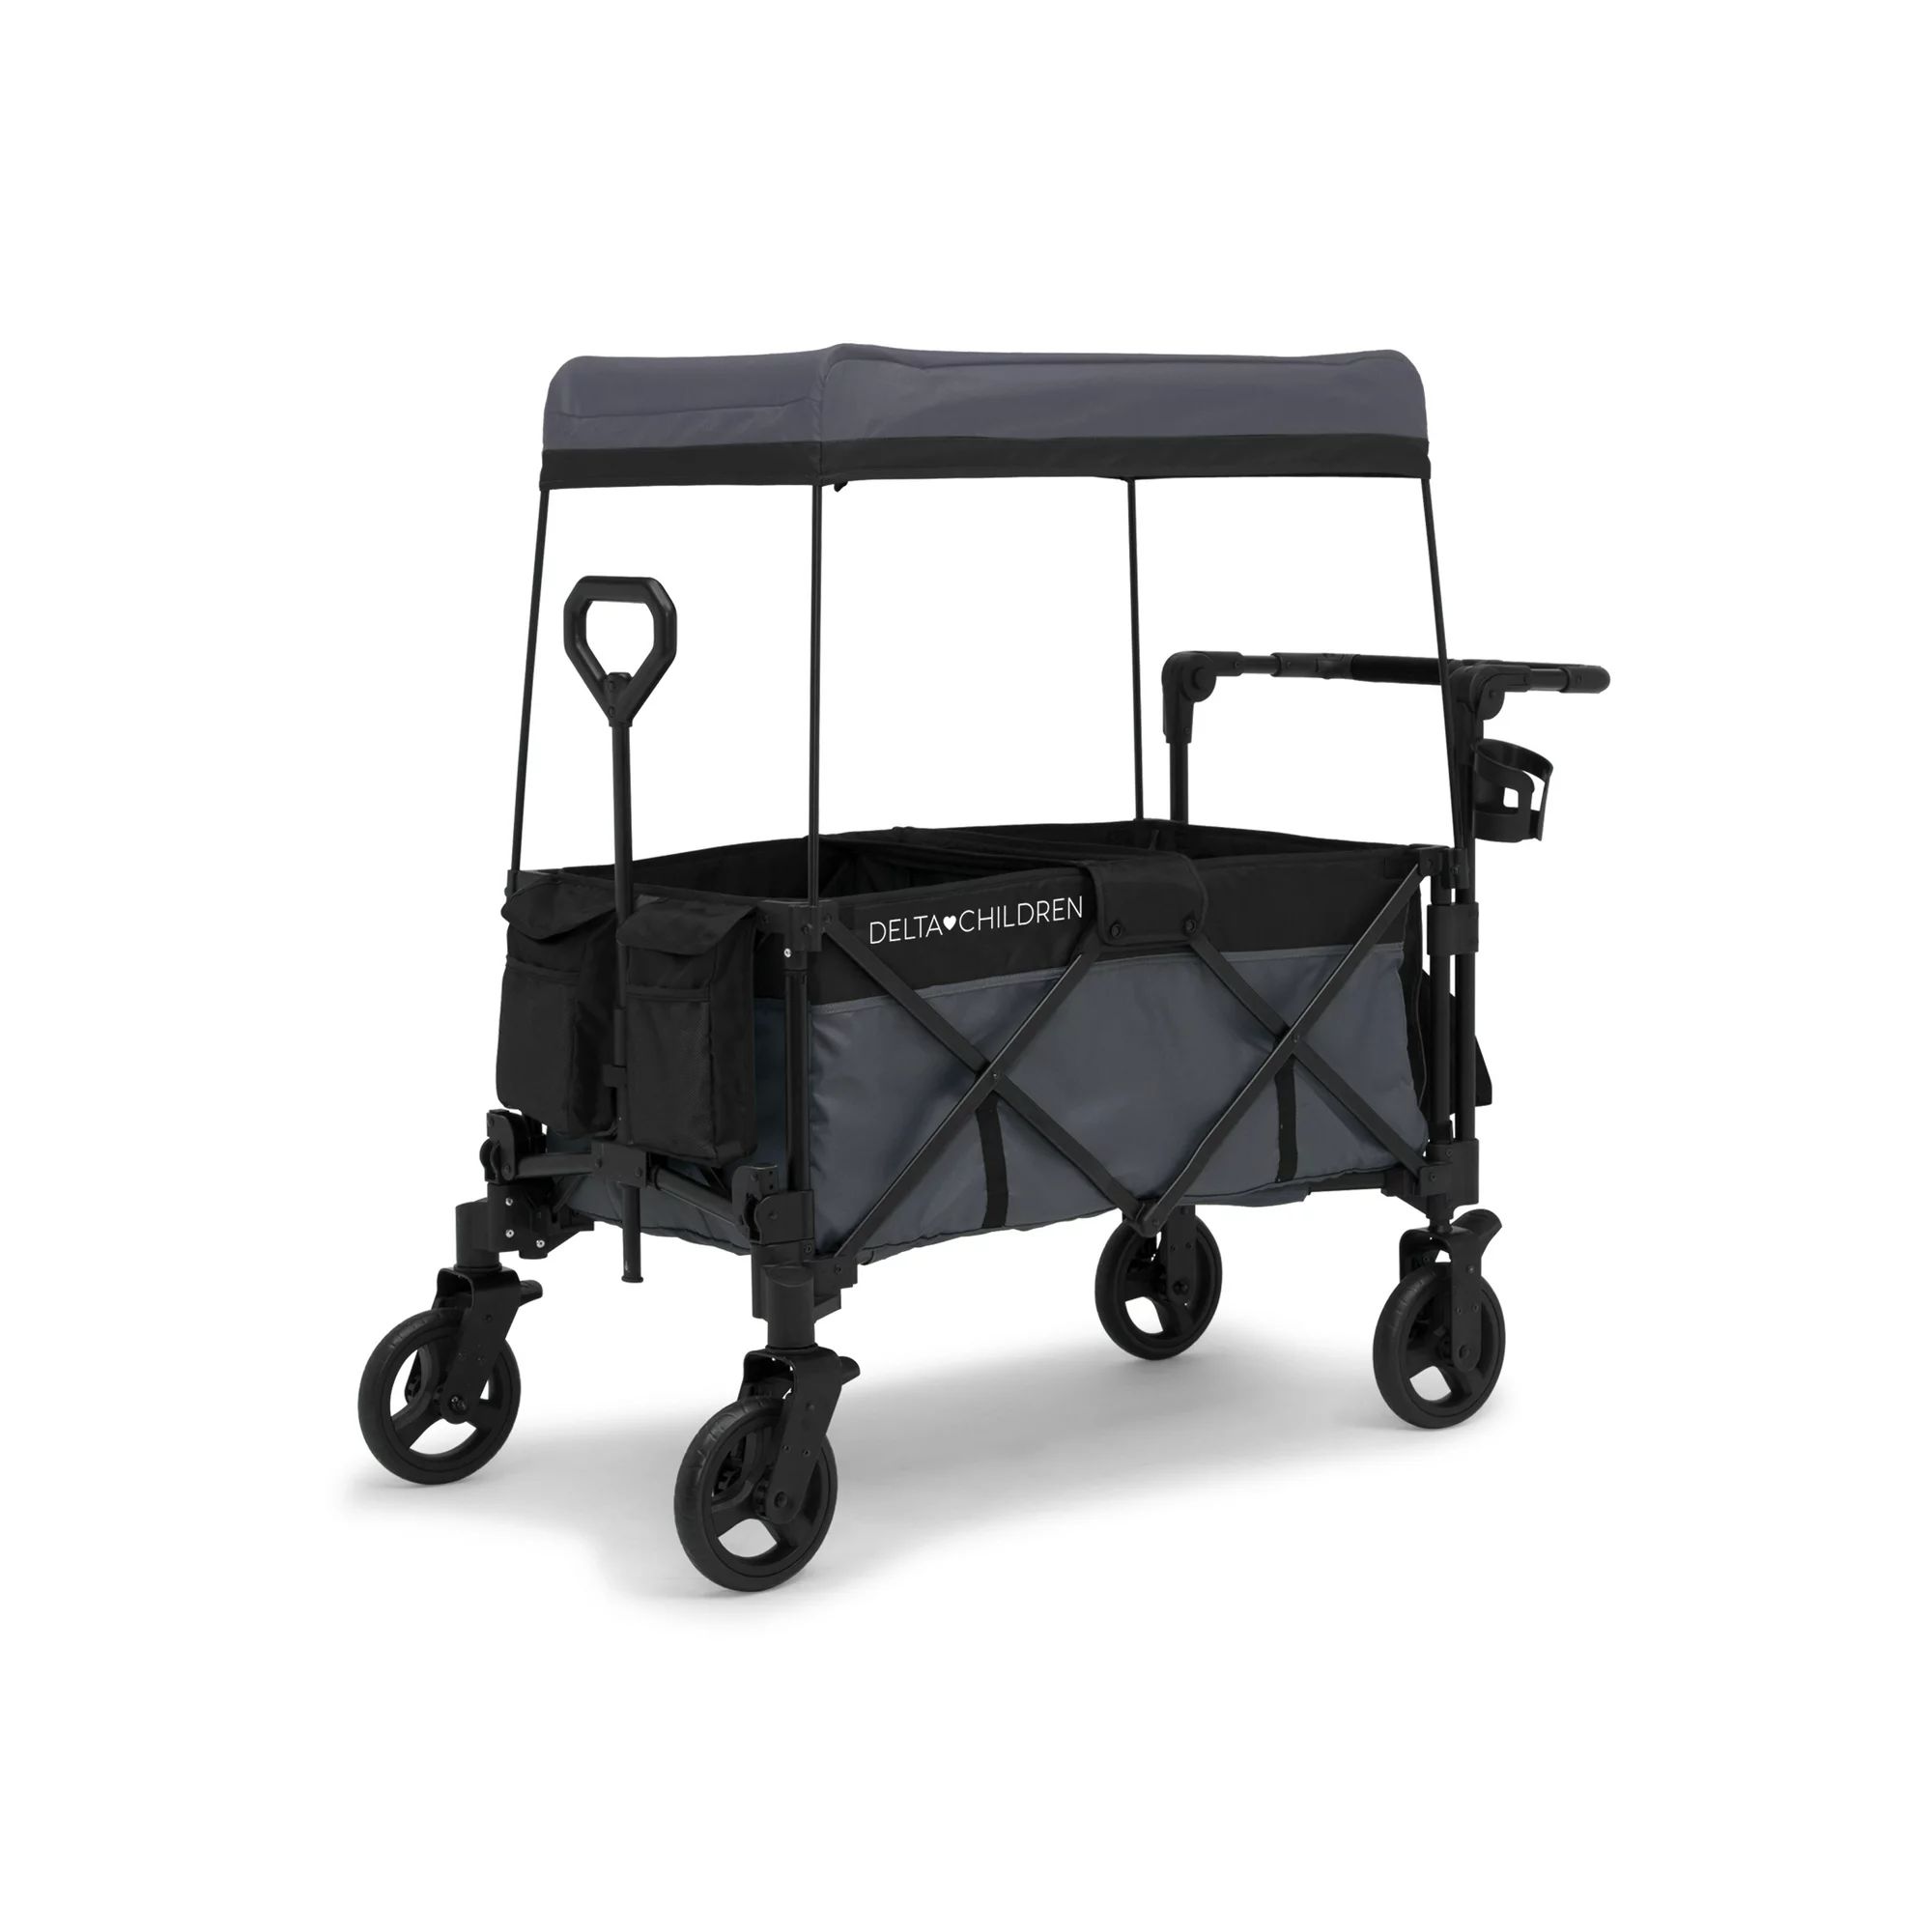 Delta Children Adventure Stroller Wagon, Grey/Black | Walmart (US)